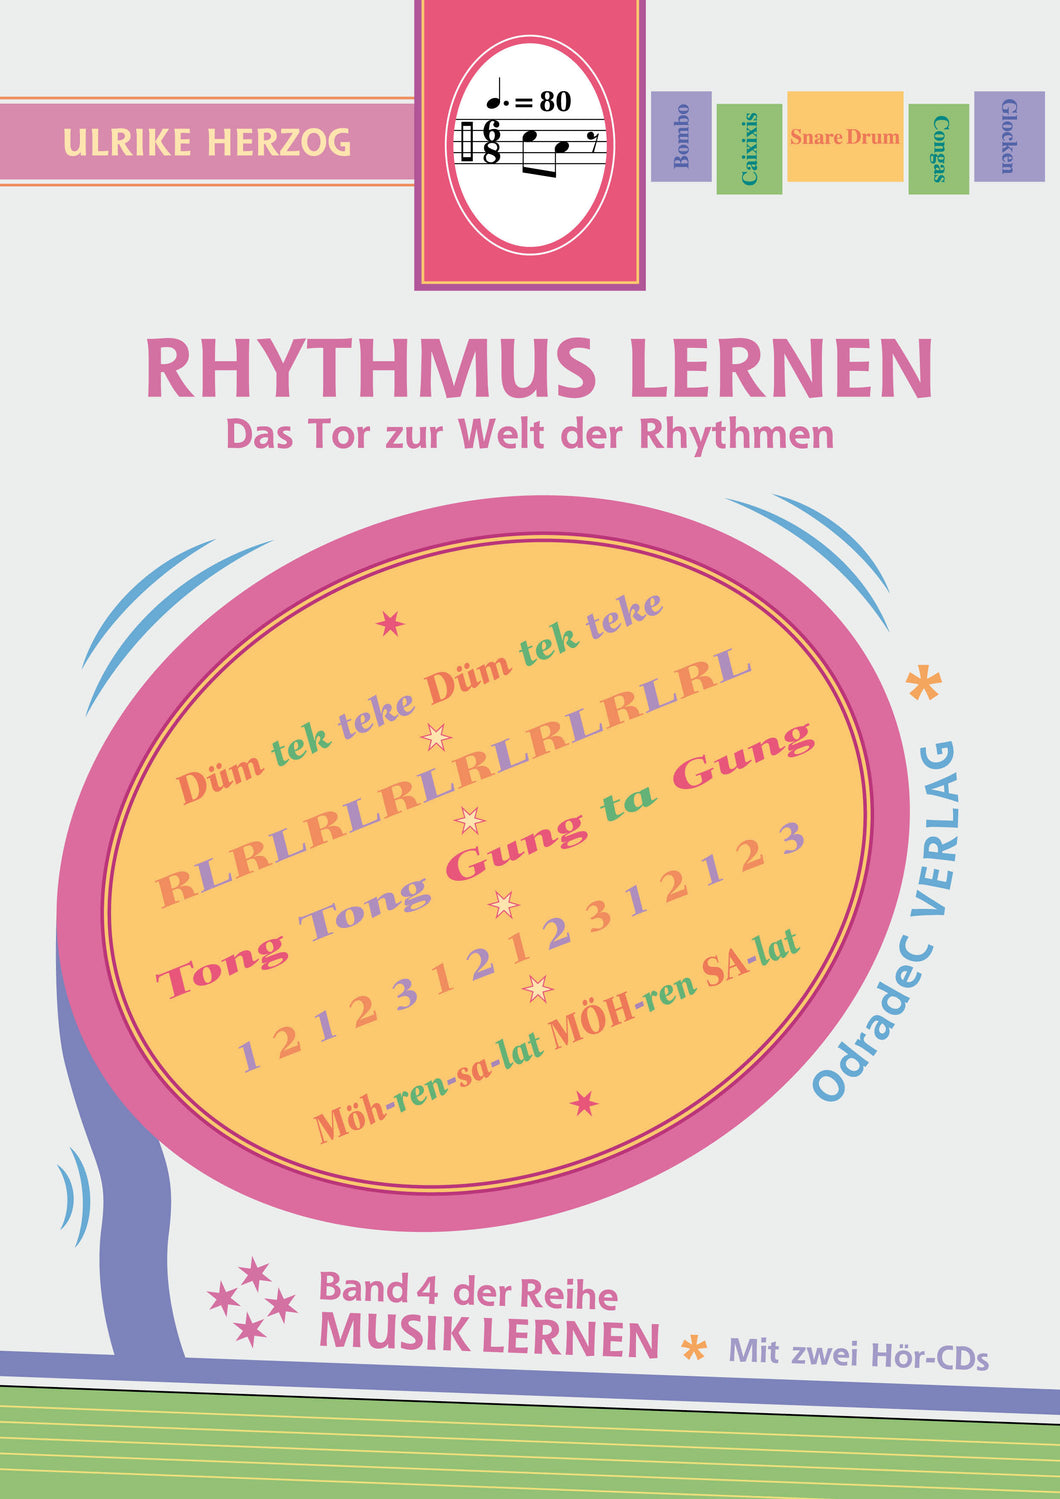 Herzog, Ulrike: Rhythmus lernen. Das Tor zur Welt der Rhythmen (Buch). Mit 2 Hör-CDs